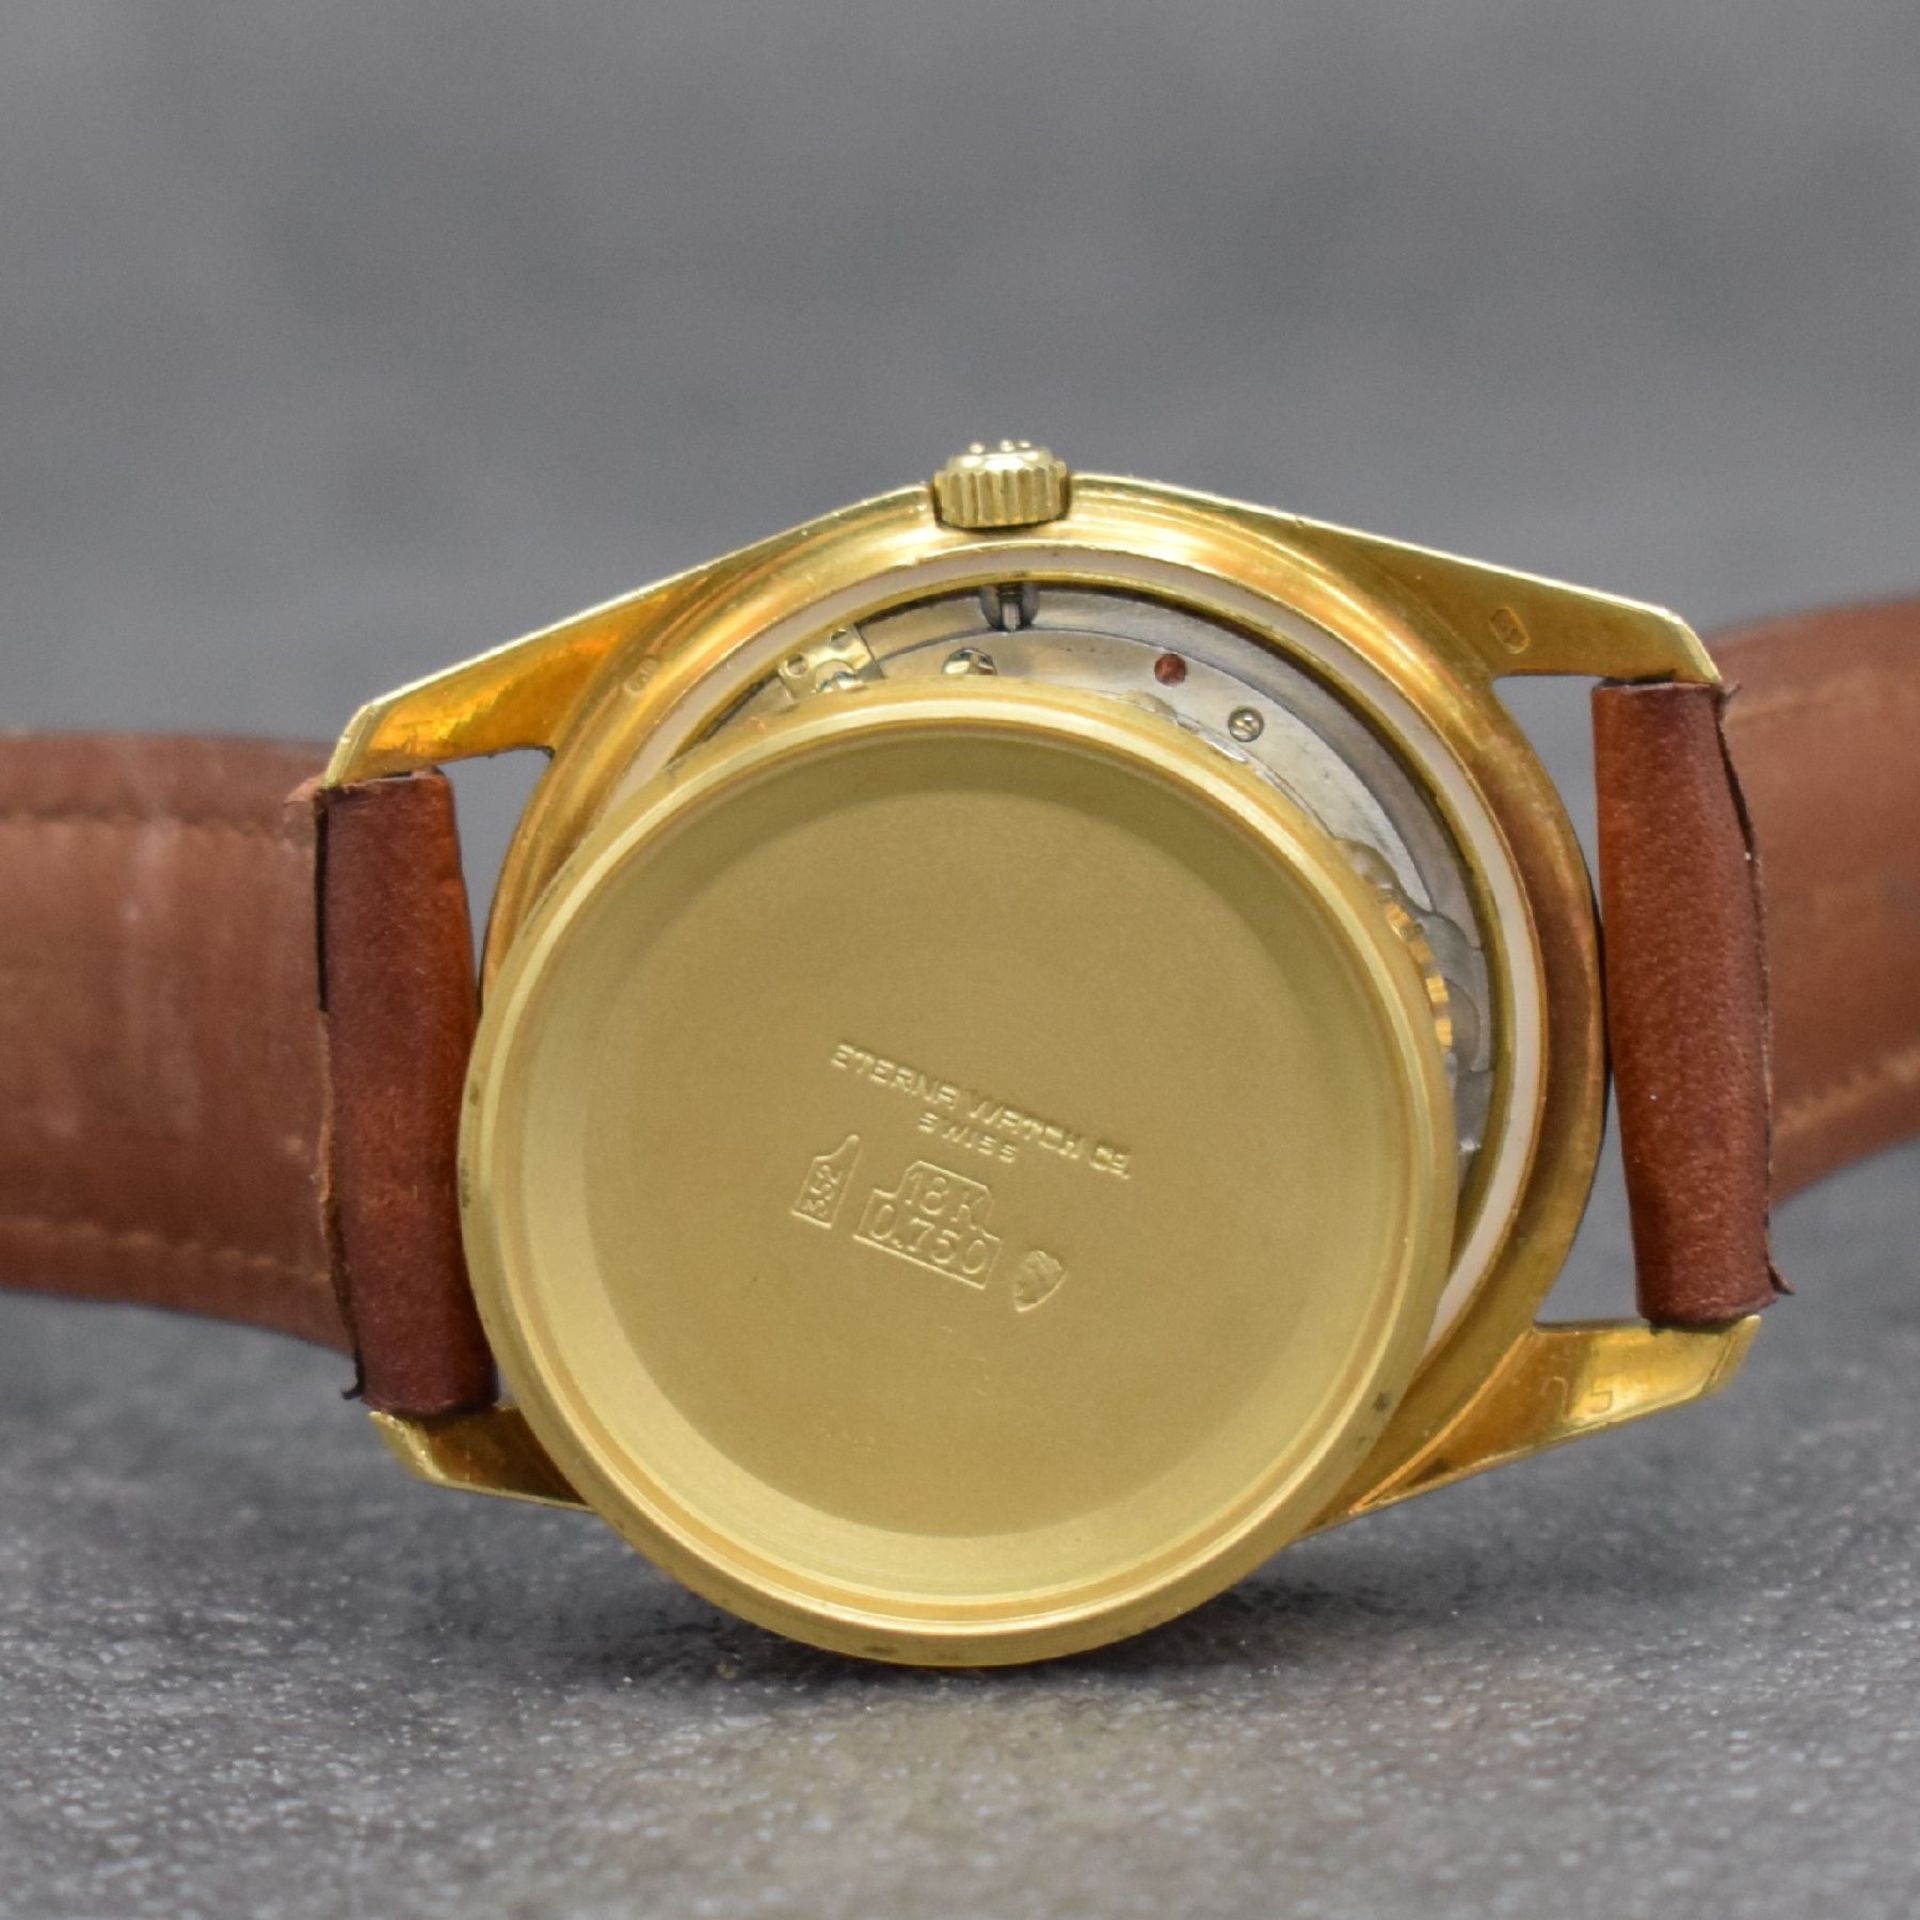 ETERNA Chronometer Herrenarmbanduhr in GG 750/000, - Image 9 of 10